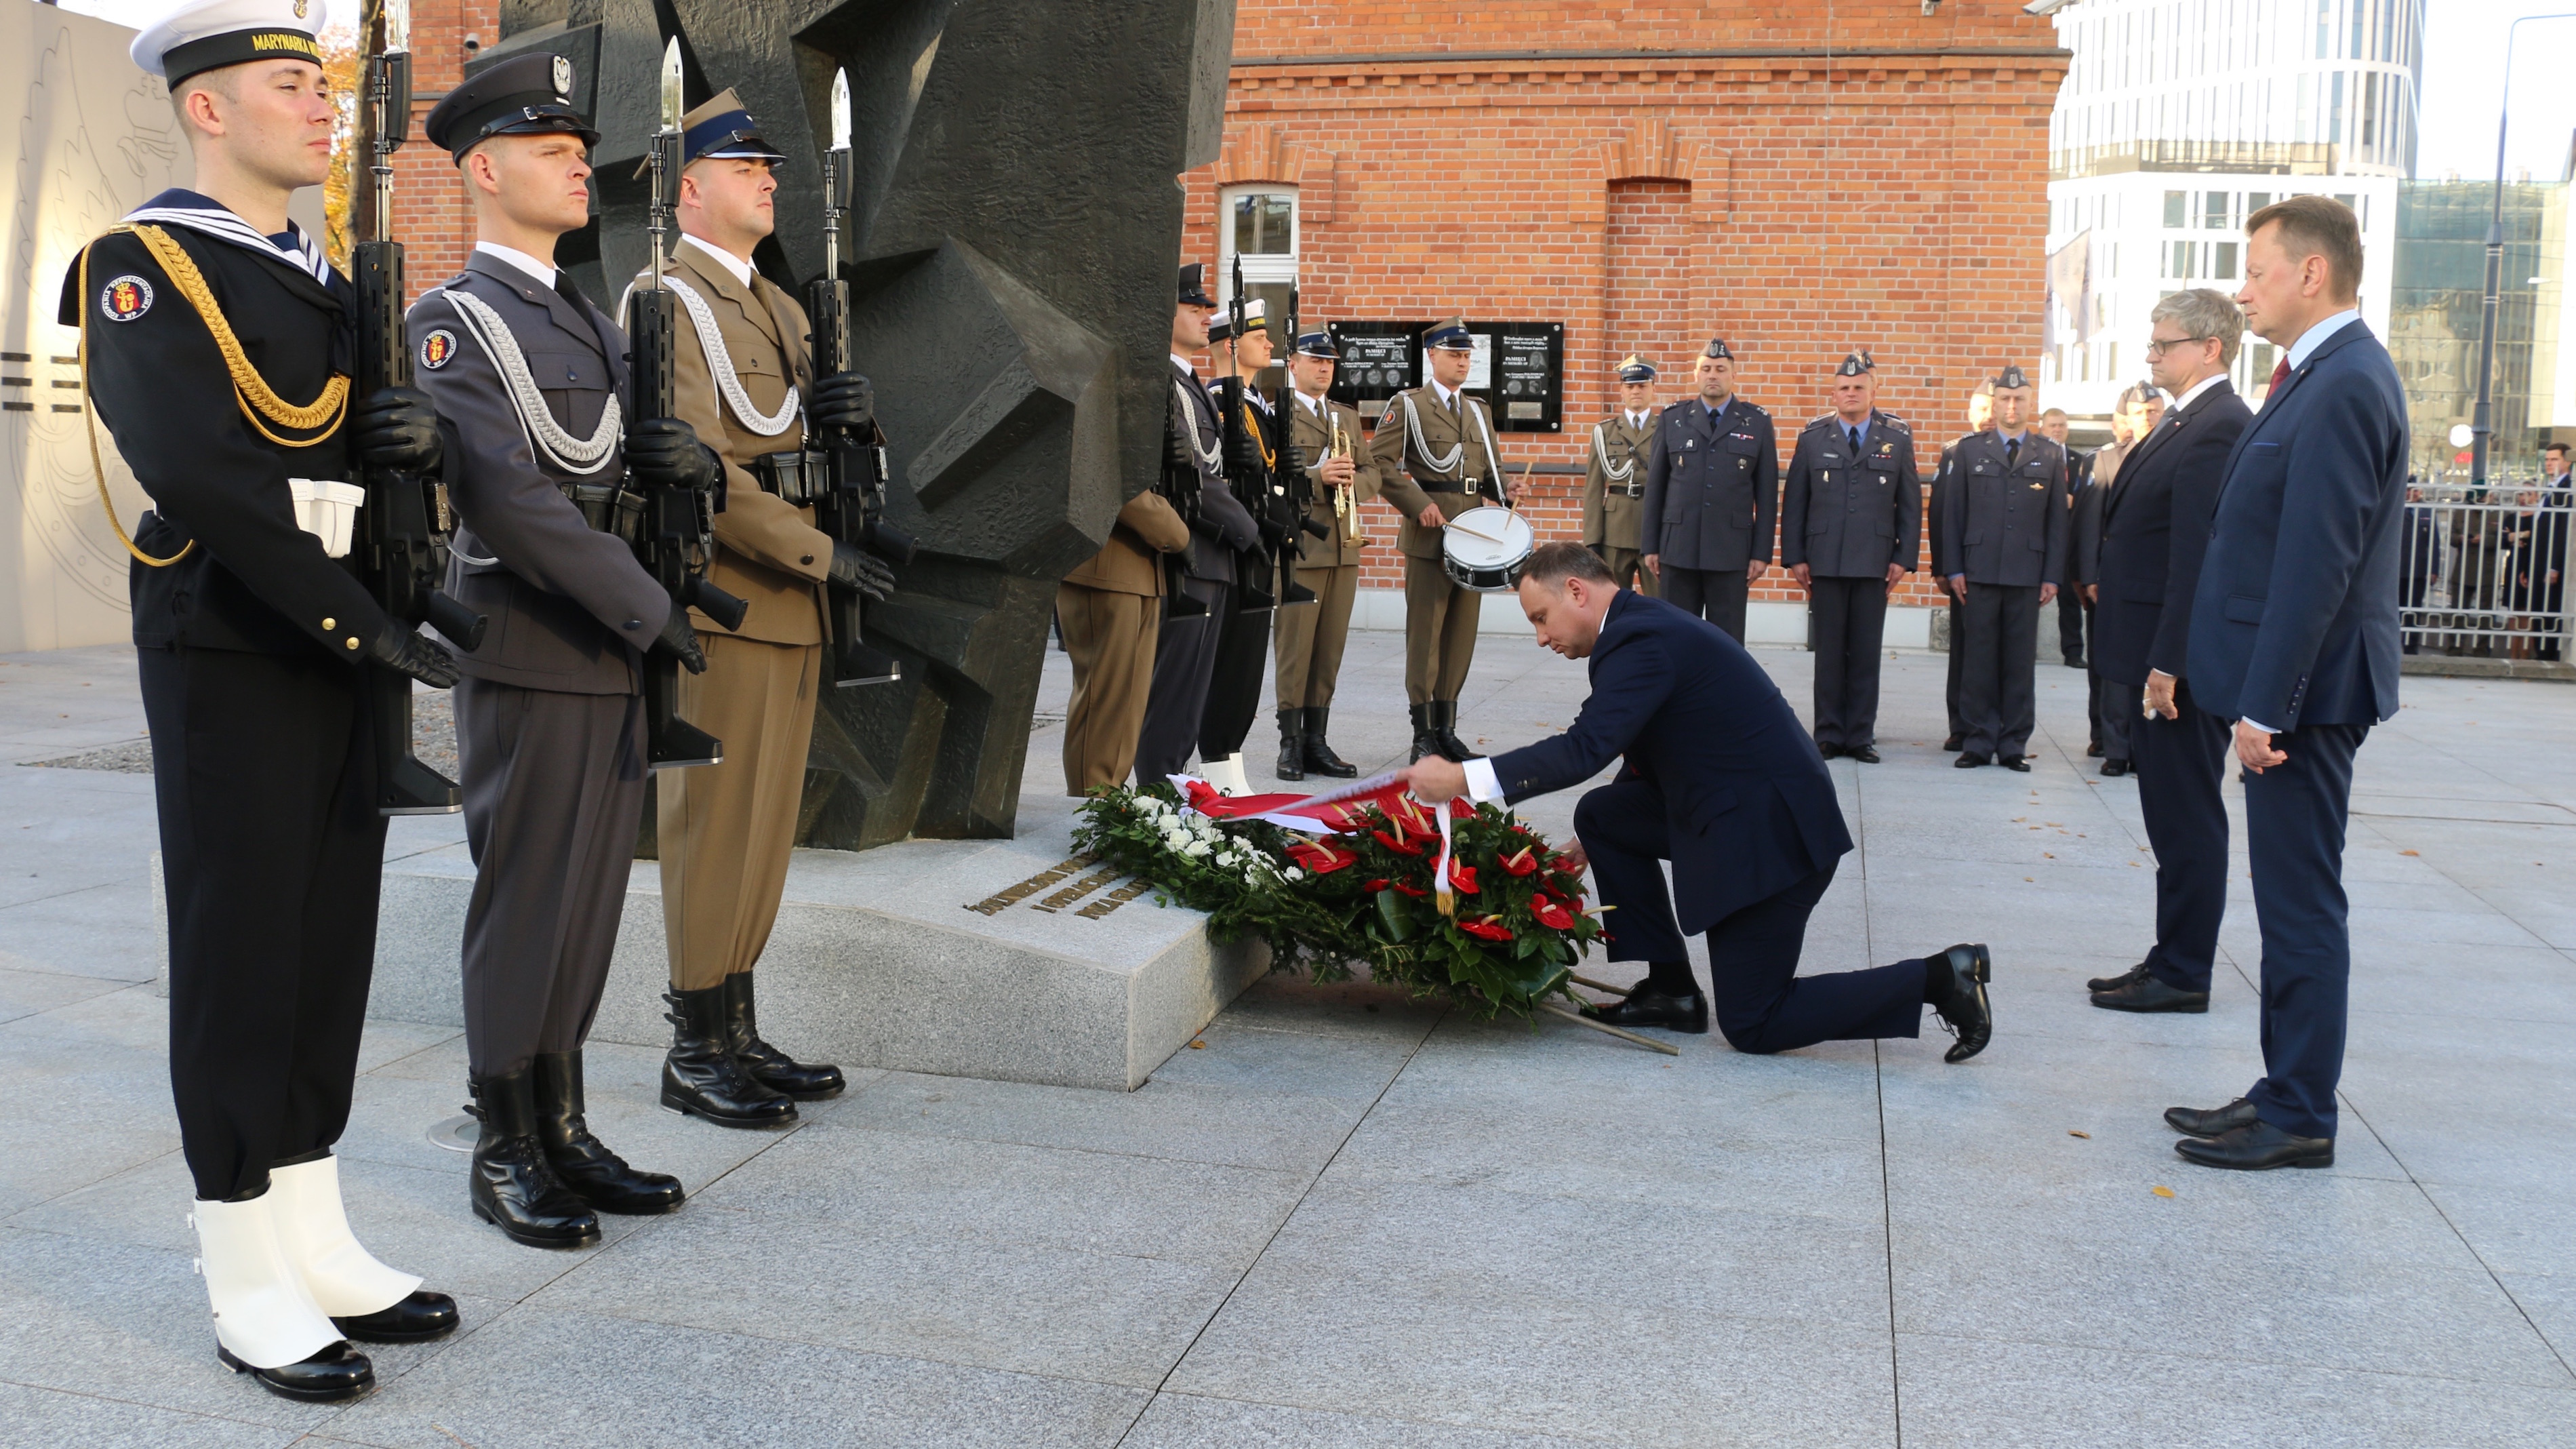 Prezydent Andrzej Duda składa wieniec przed pomnikiem żołnierzy poległych na misjach zagranicznych. Fot. Rafał Lesiecki / Defence24.pl